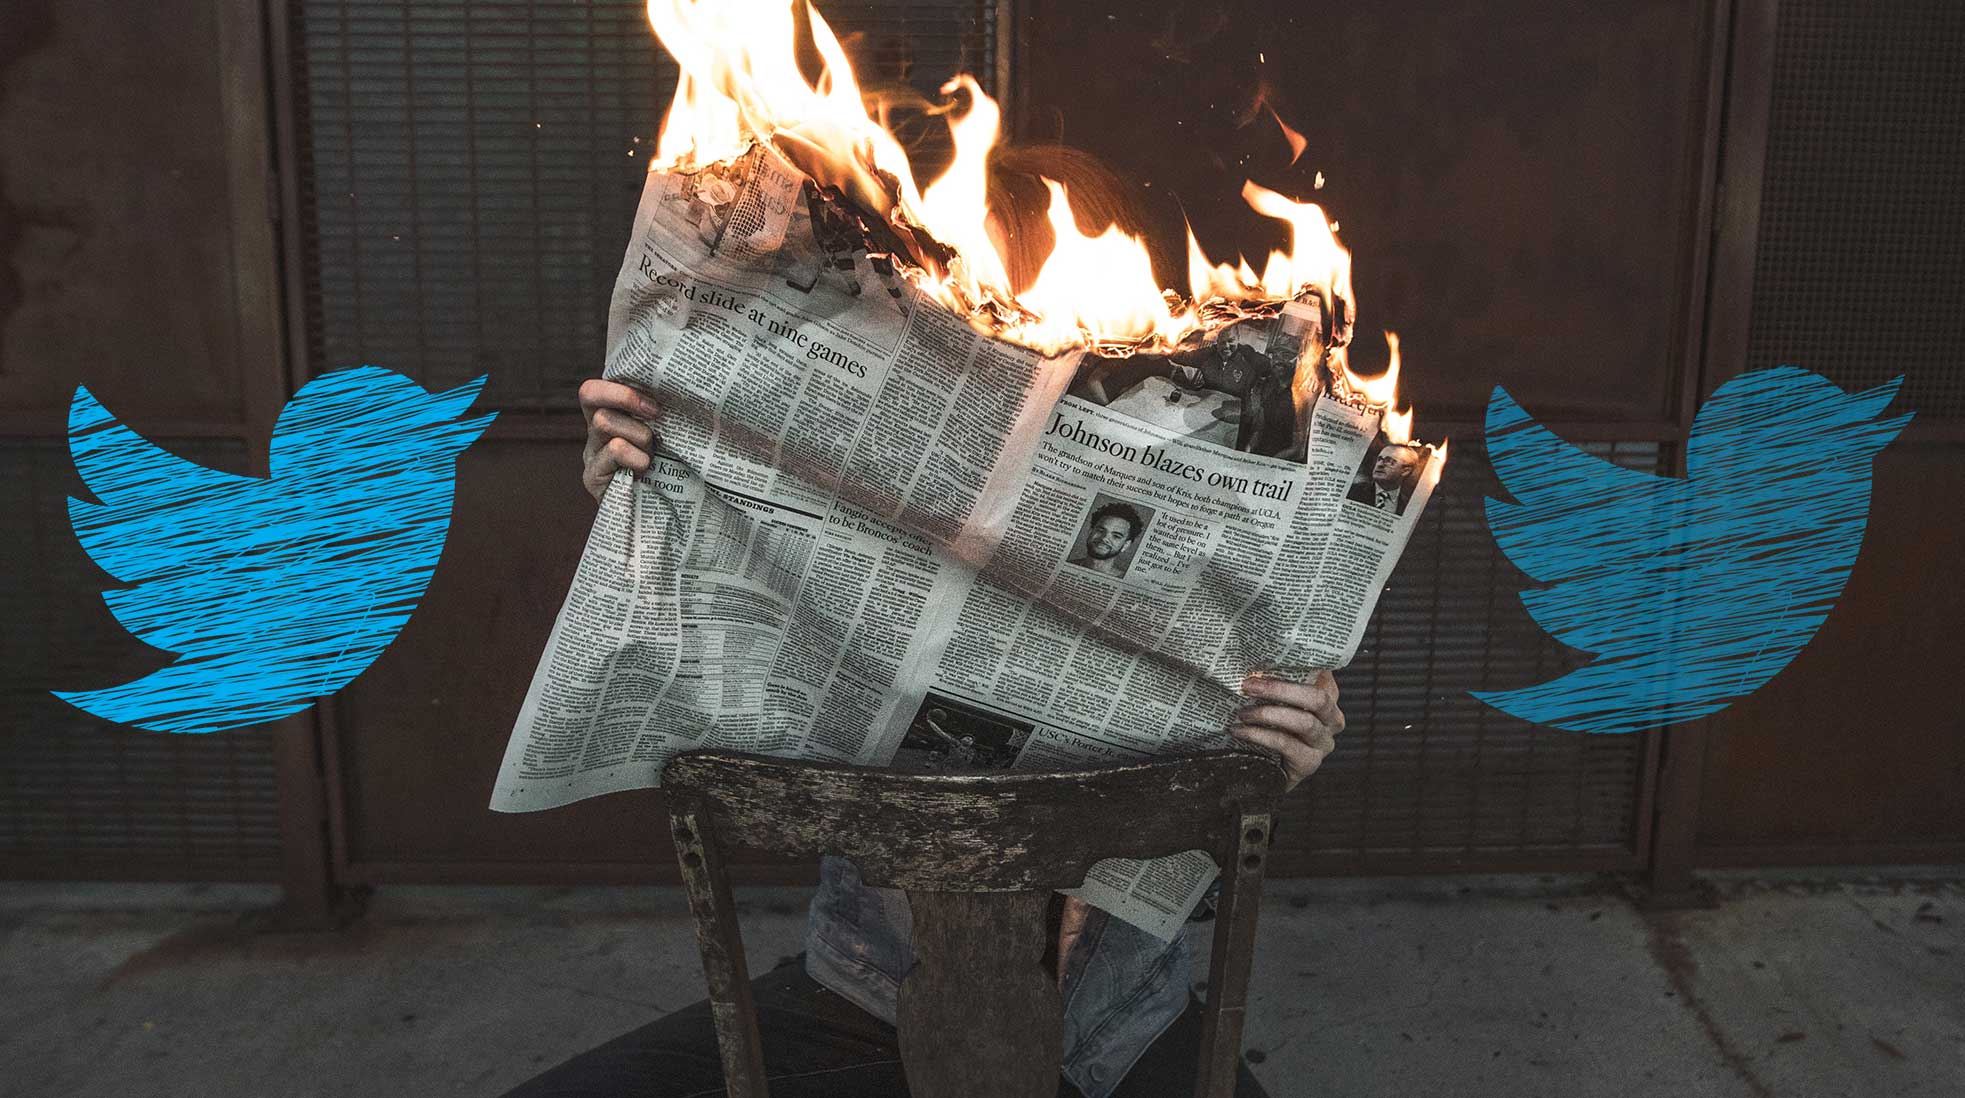 “Fake news” frodas på Twitter/X. Foto: Jeremy Bishop/Unsplash. Twitterfågel: Elisa/Pixabay. Kollage: Media.nu.